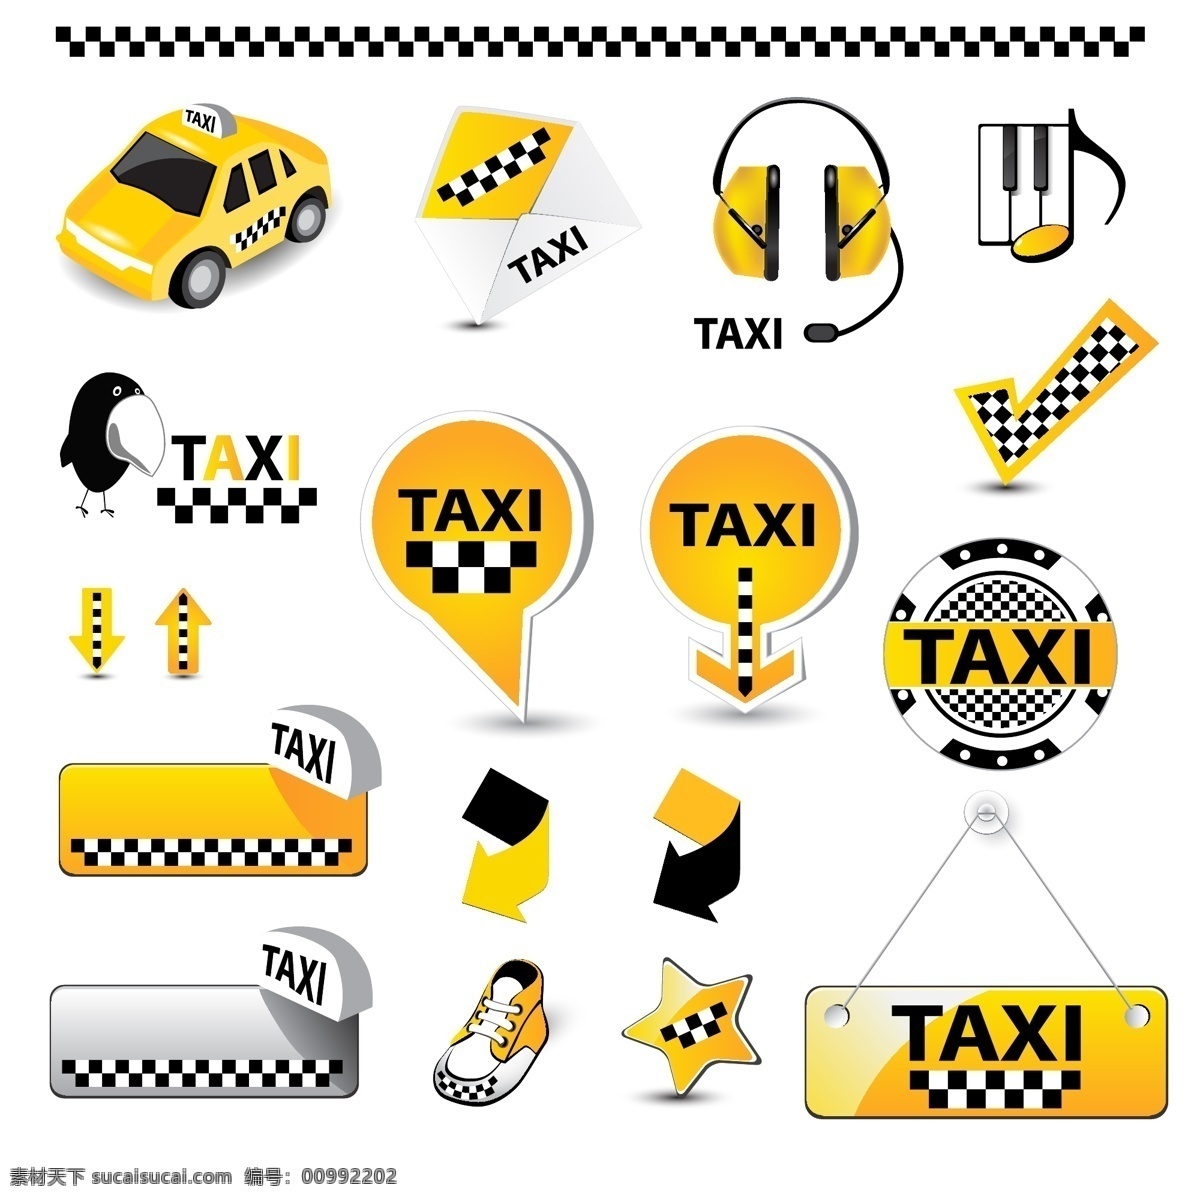 logo 标签 标识 标识标志图标 标志 标志图标 出租车 箭头 路标 矢量 模板下载 taxi 黑黄方格 打的 的士 小汽车 图标 小图标 矢量图 其他矢量图